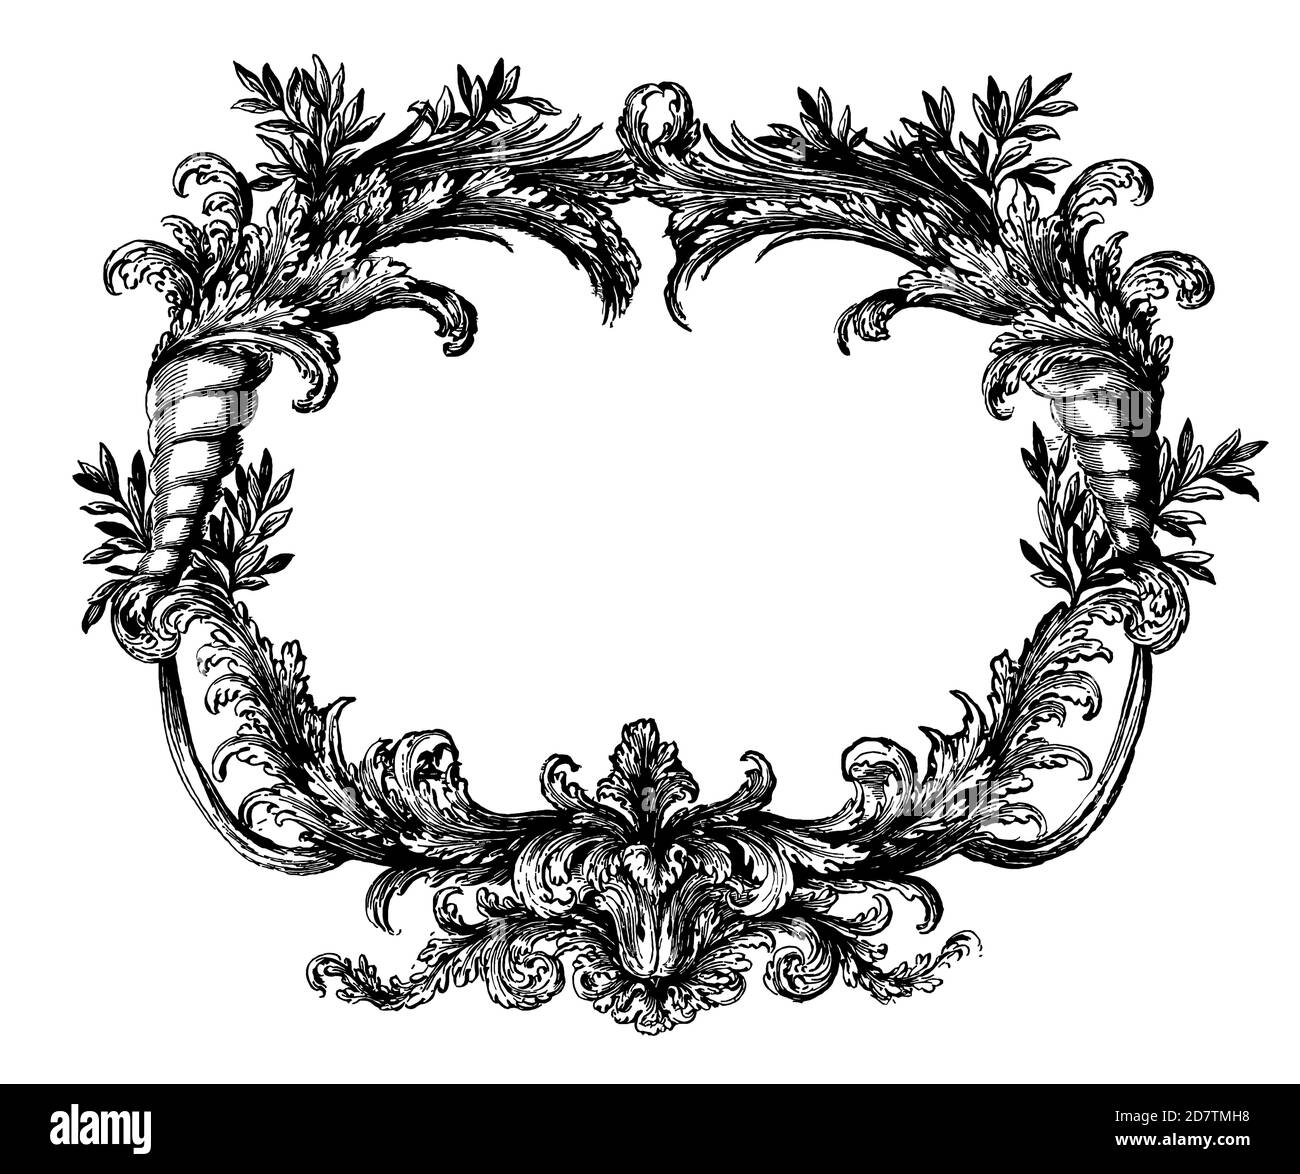 Diseño de marco decorativo vintage en el borde - Arte tipográfico clásico antiguo y diseño de bordes Vignettes florales de fleurones para decoración de dibujos Foto de stock